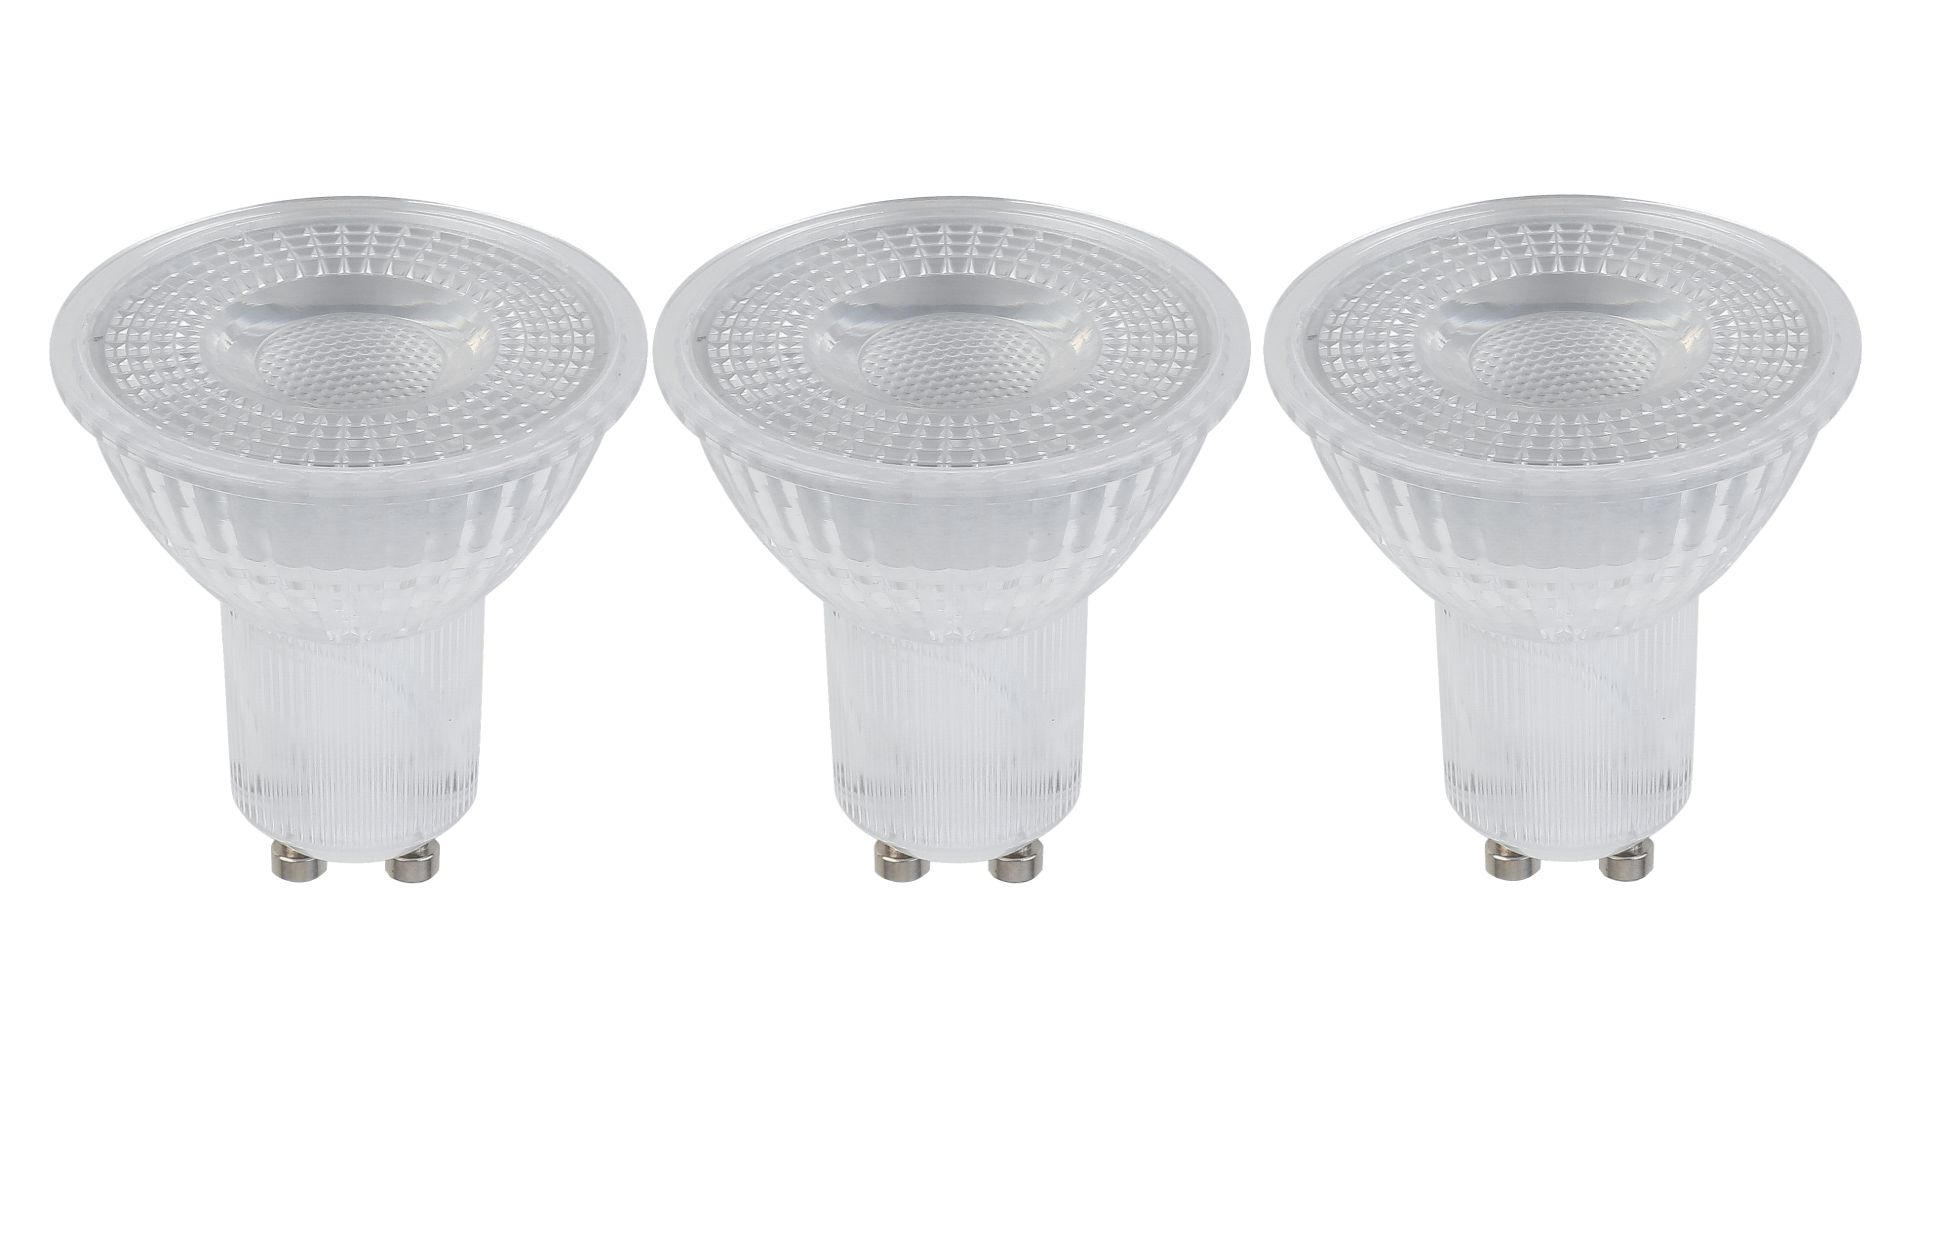 LED ŽIAROVKA - strieborná, Basics, kov/plast (5/5,3cm) - Boxxx